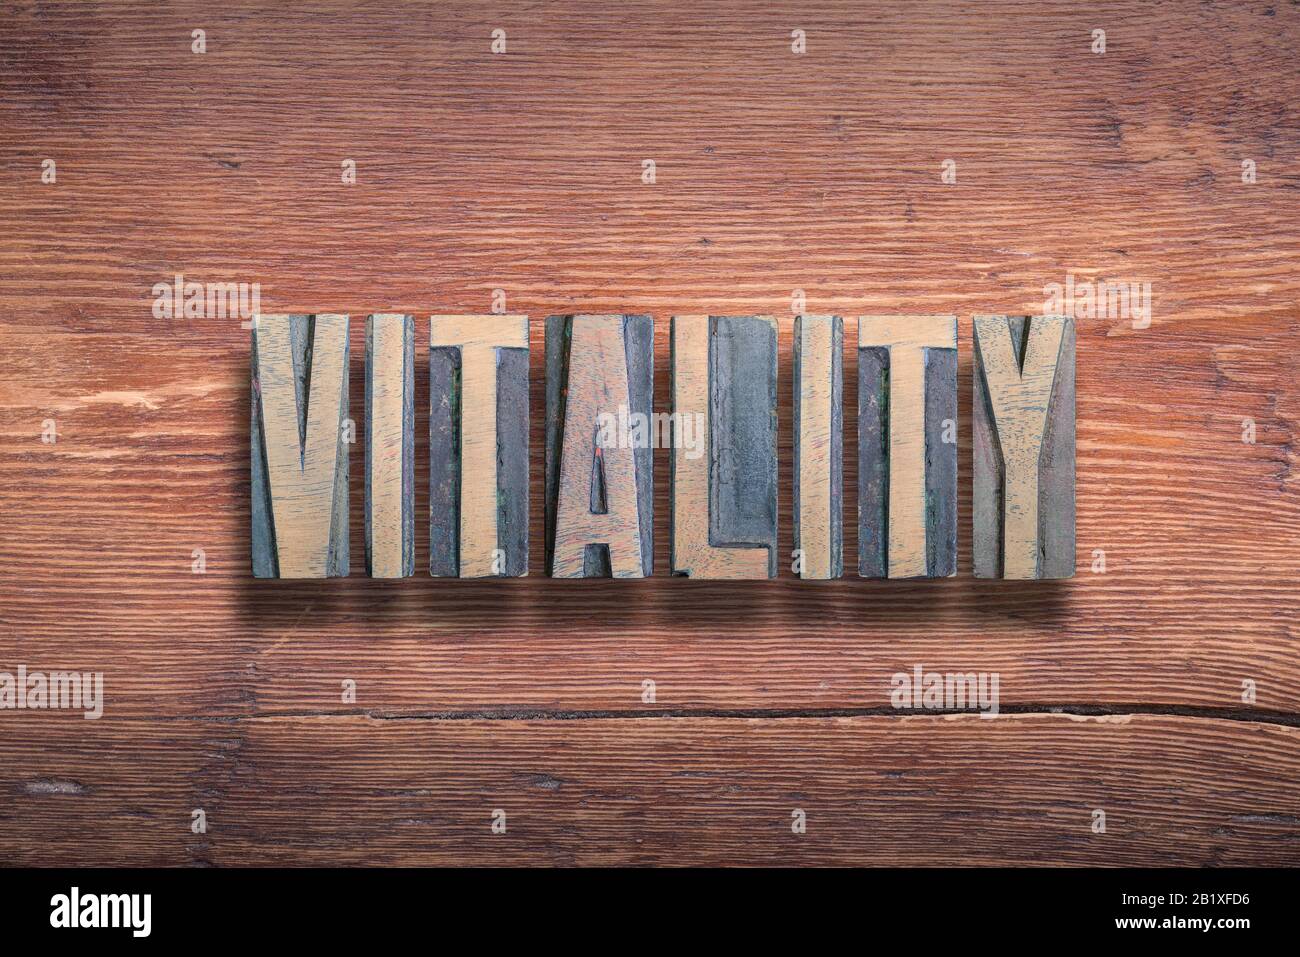 Vitality Wort kombiniert auf alter lackierter Holzoberfläche Stockfoto